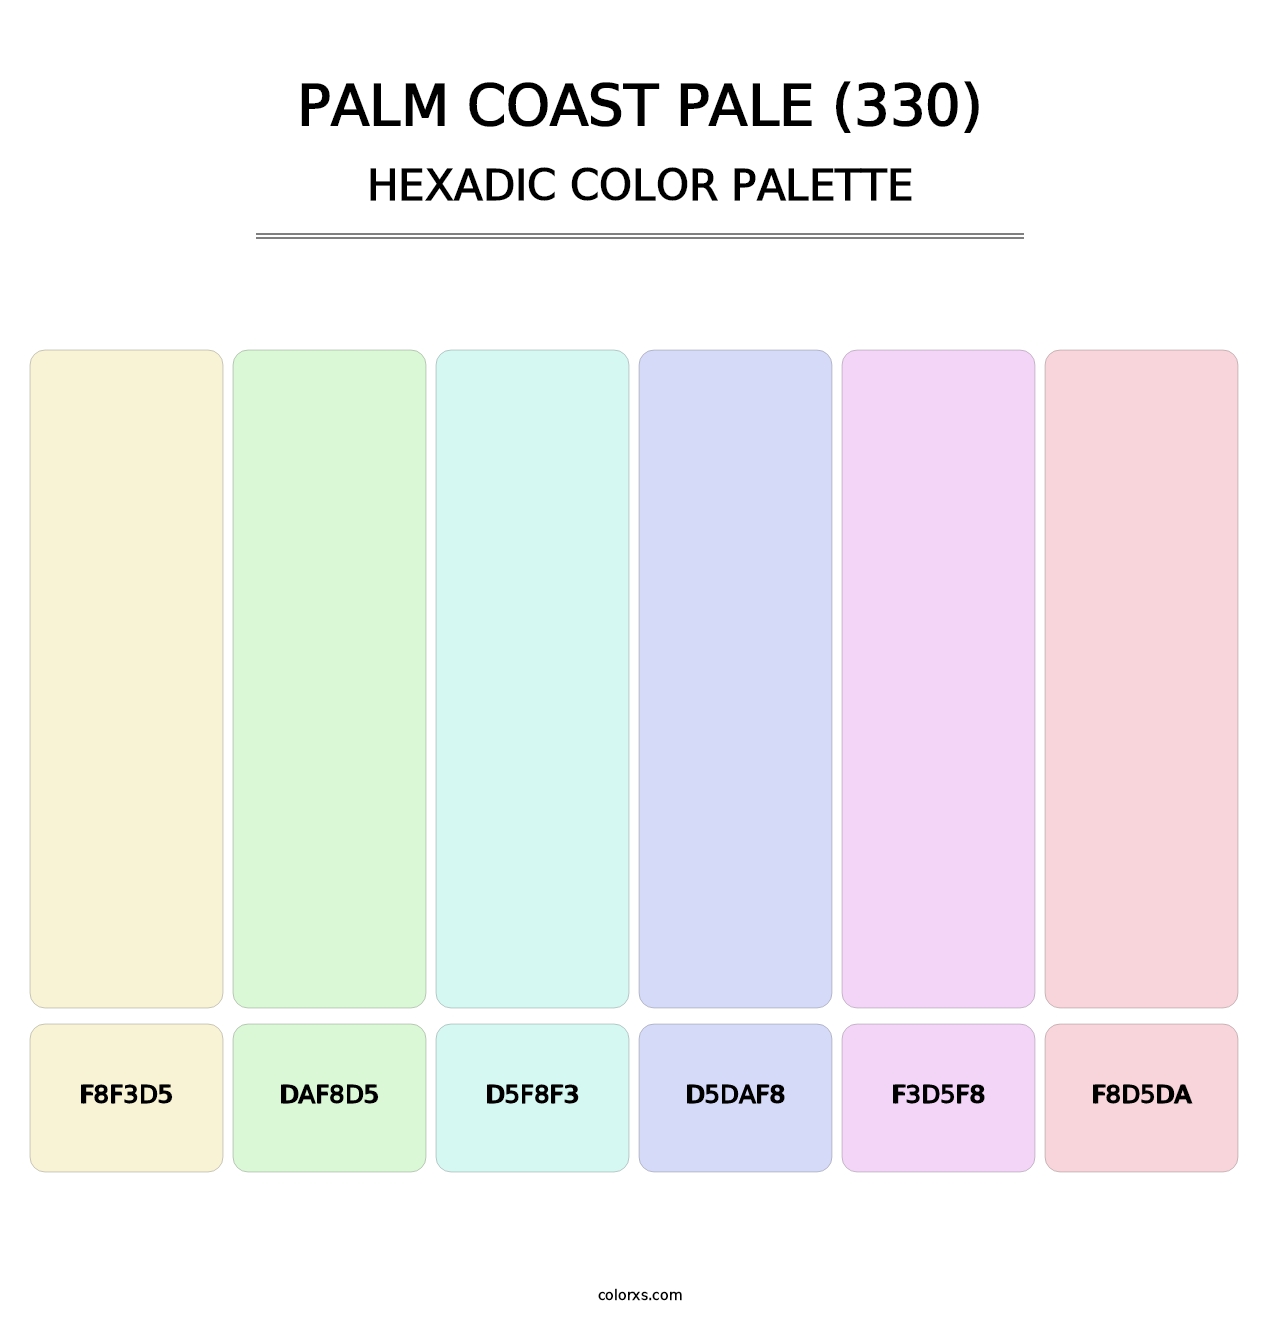 Palm Coast Pale (330) - Hexadic Color Palette